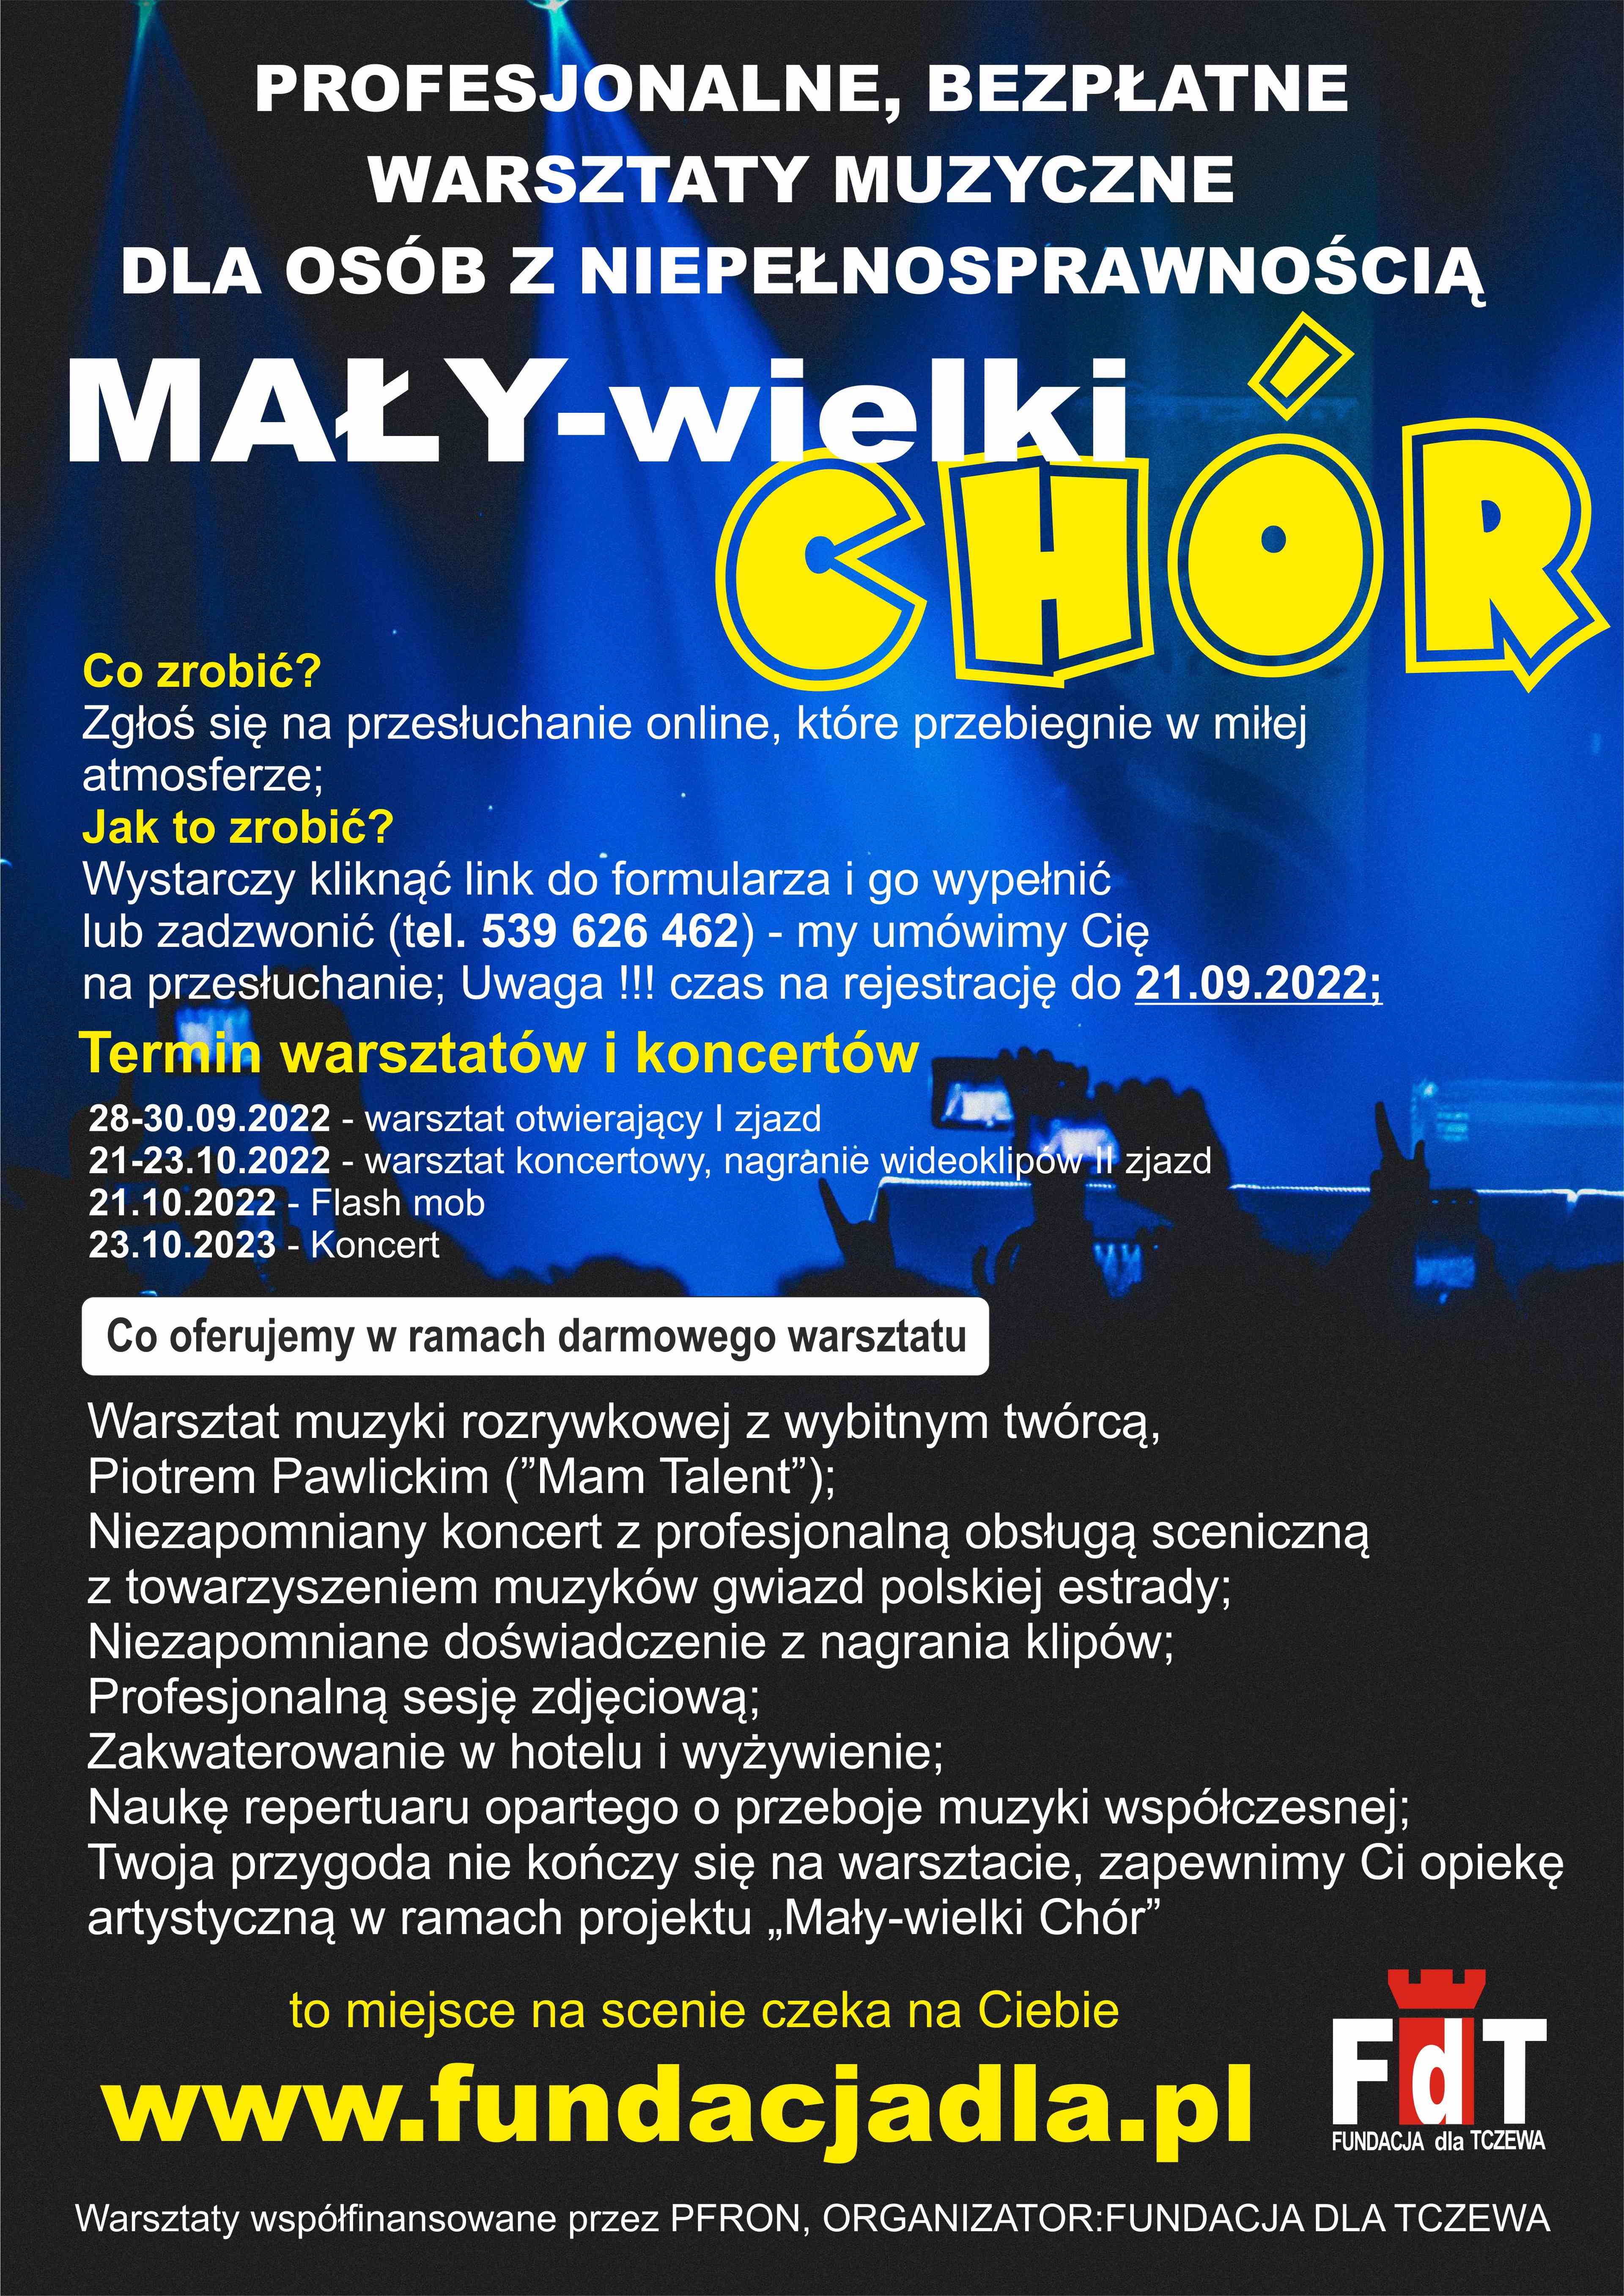 Plakat informujący o warsztatach muzycznych